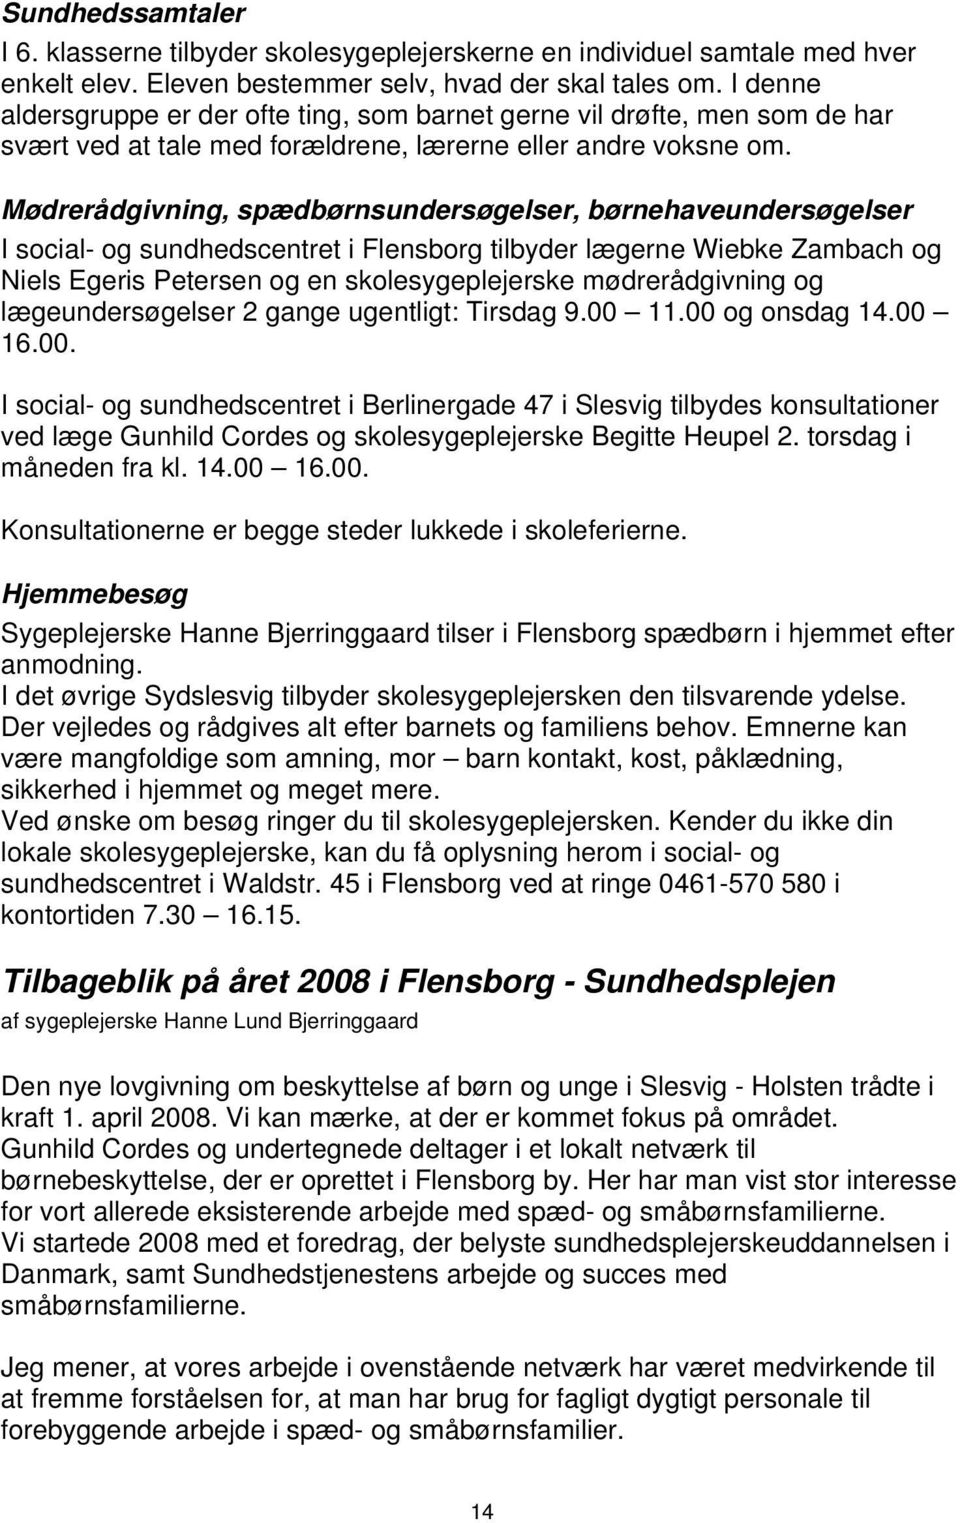 Sundhedstjeneste for Sydslesvig - PDF Download